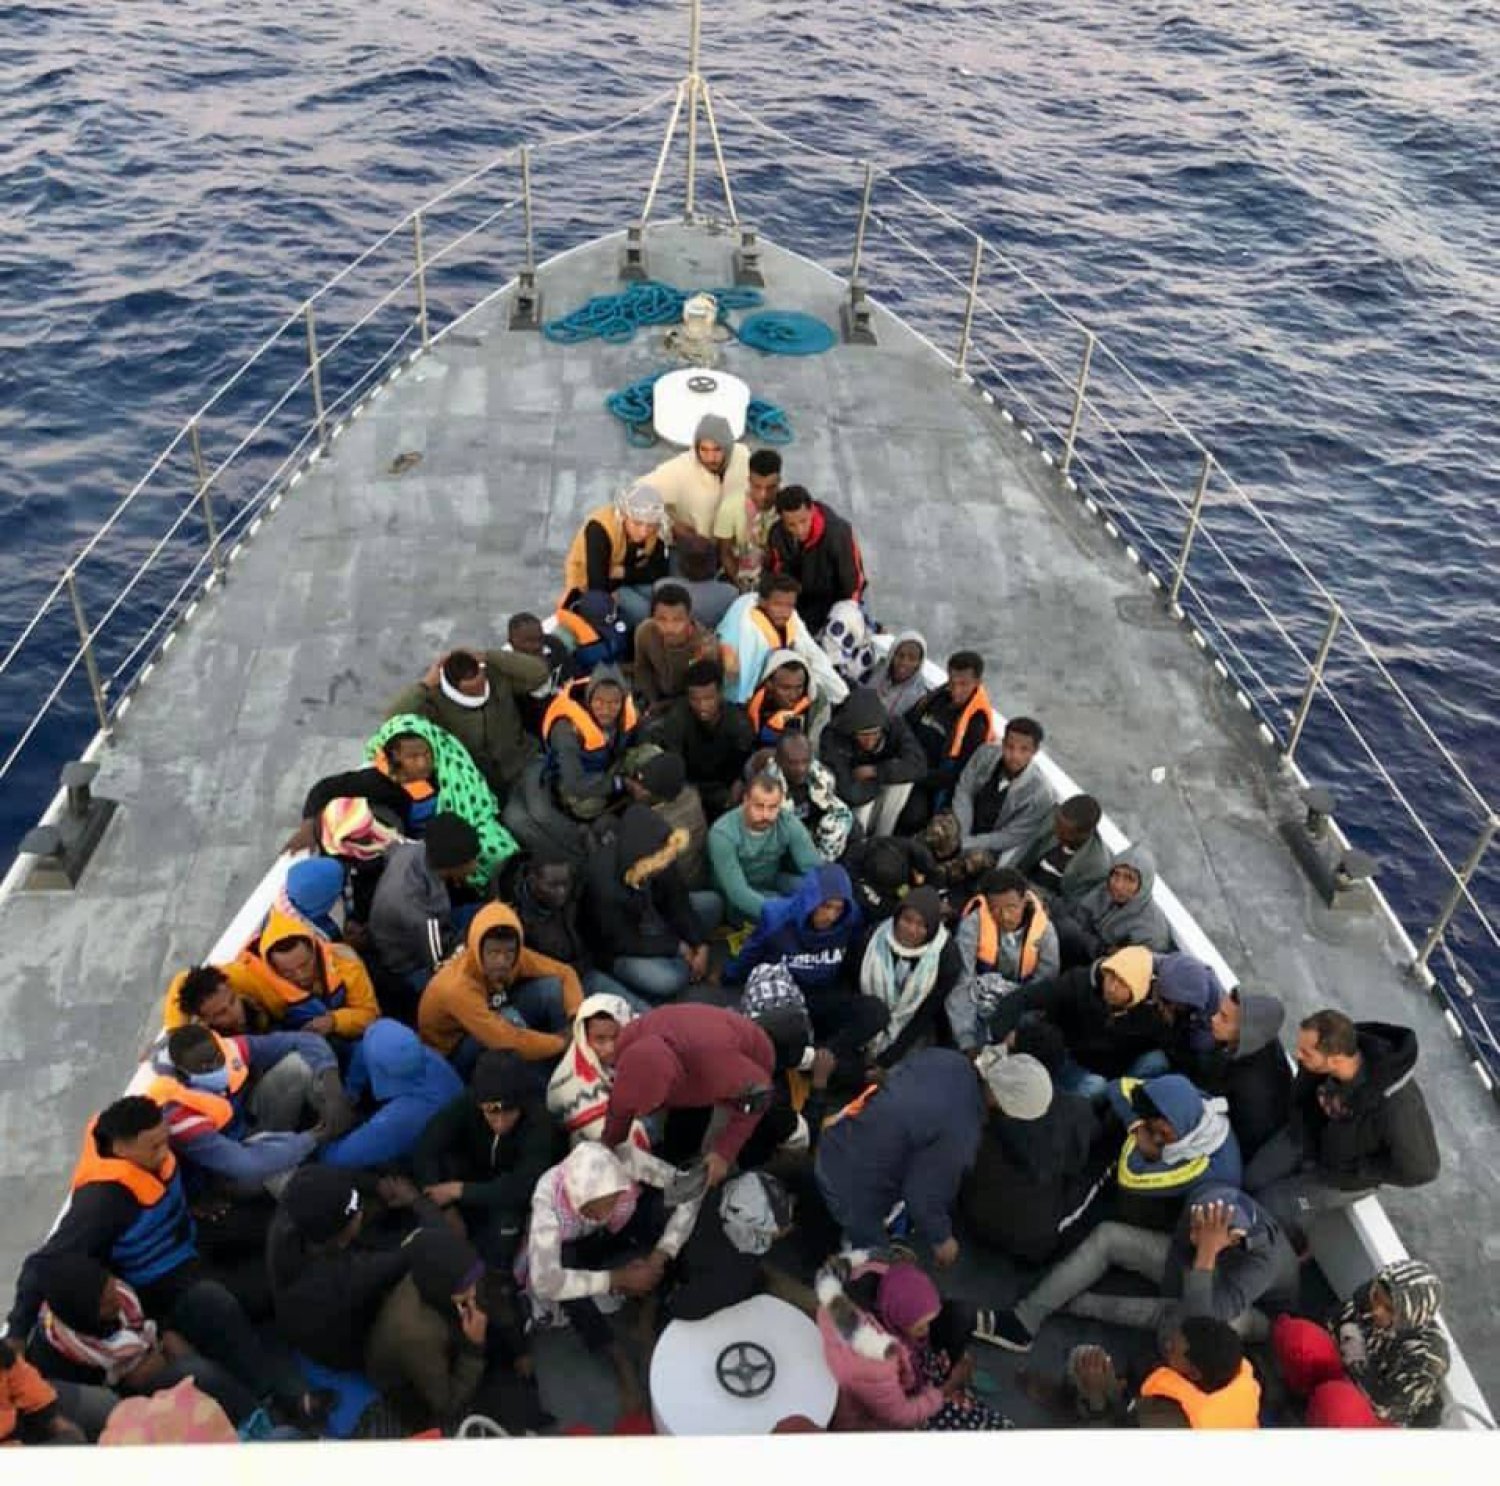 خفر السواحل بغرب ليبيا خلال عملية إنقاذ عدد من المهاجرين (وزارة الداخلية بحكومة الوحدة)